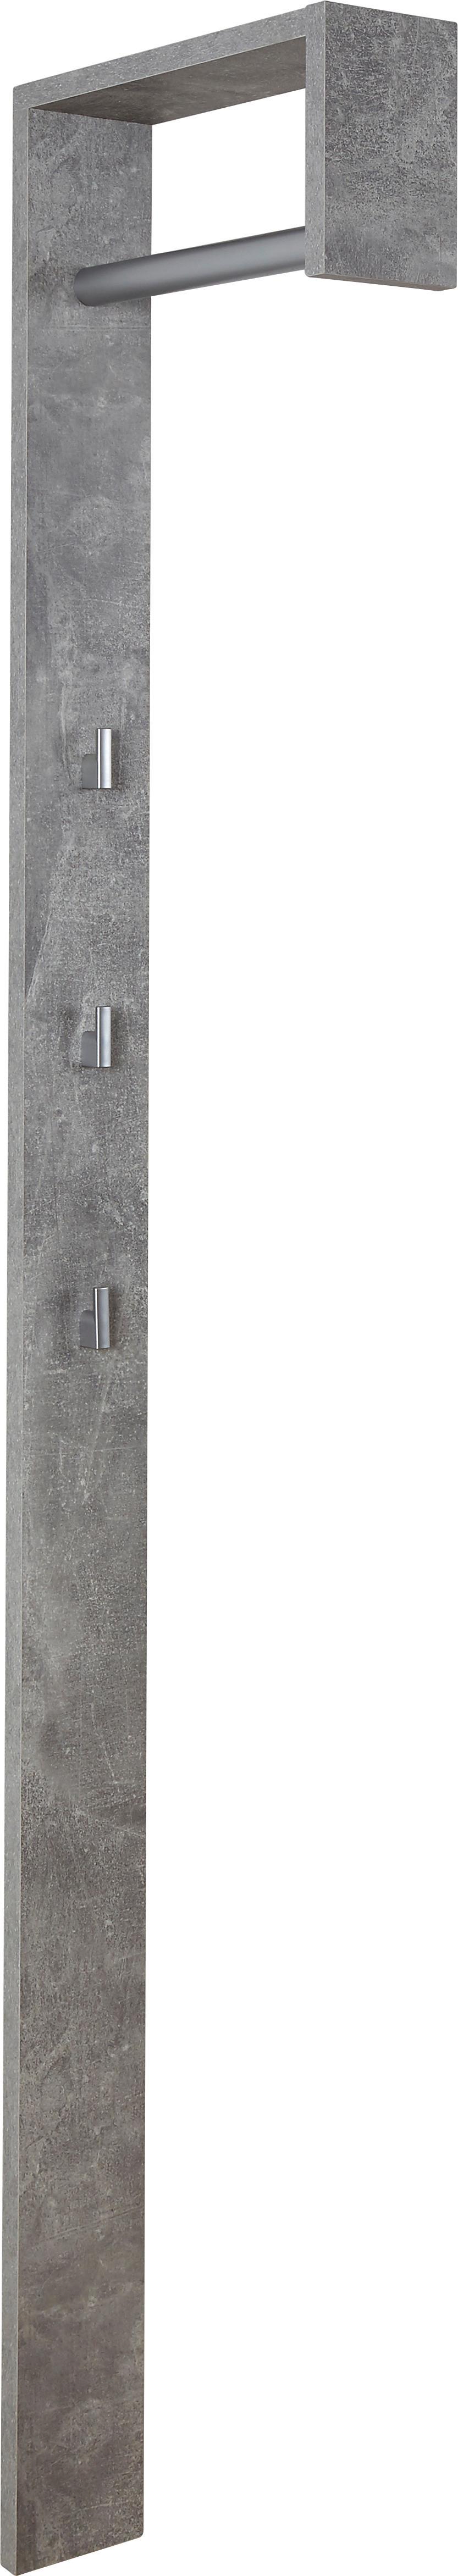 Šatní Panel Senex - šedá, Moderní, dřevo (10/170/33cm)